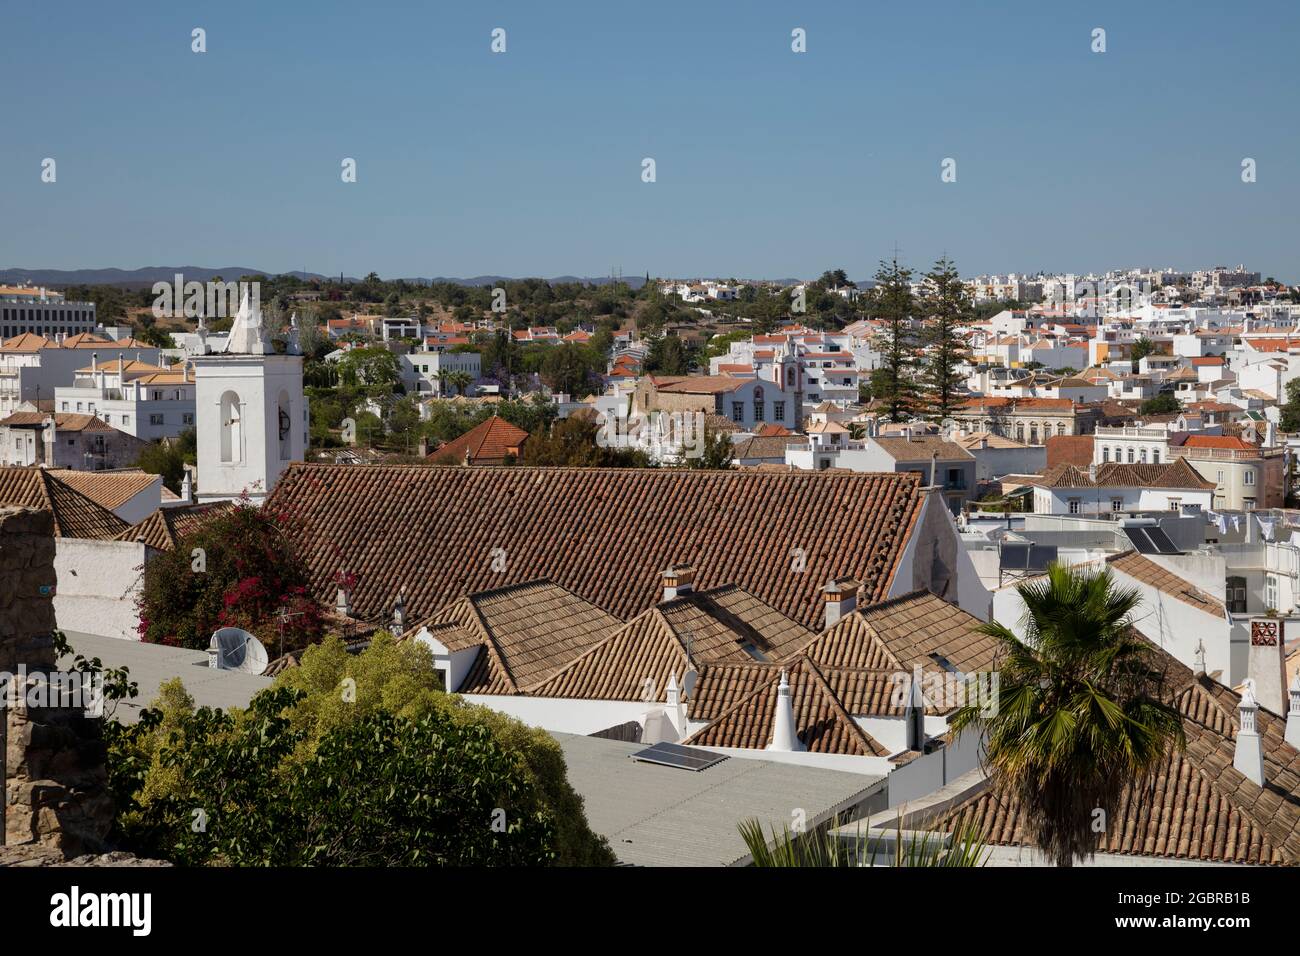 Géographie / voyage, Portugal, Algarve, Tavira, vue sur la ville, INFO-AUTORISATION-DROITS-SUPPLÉMENTAIRES-NON-DISPONIBLE Banque D'Images